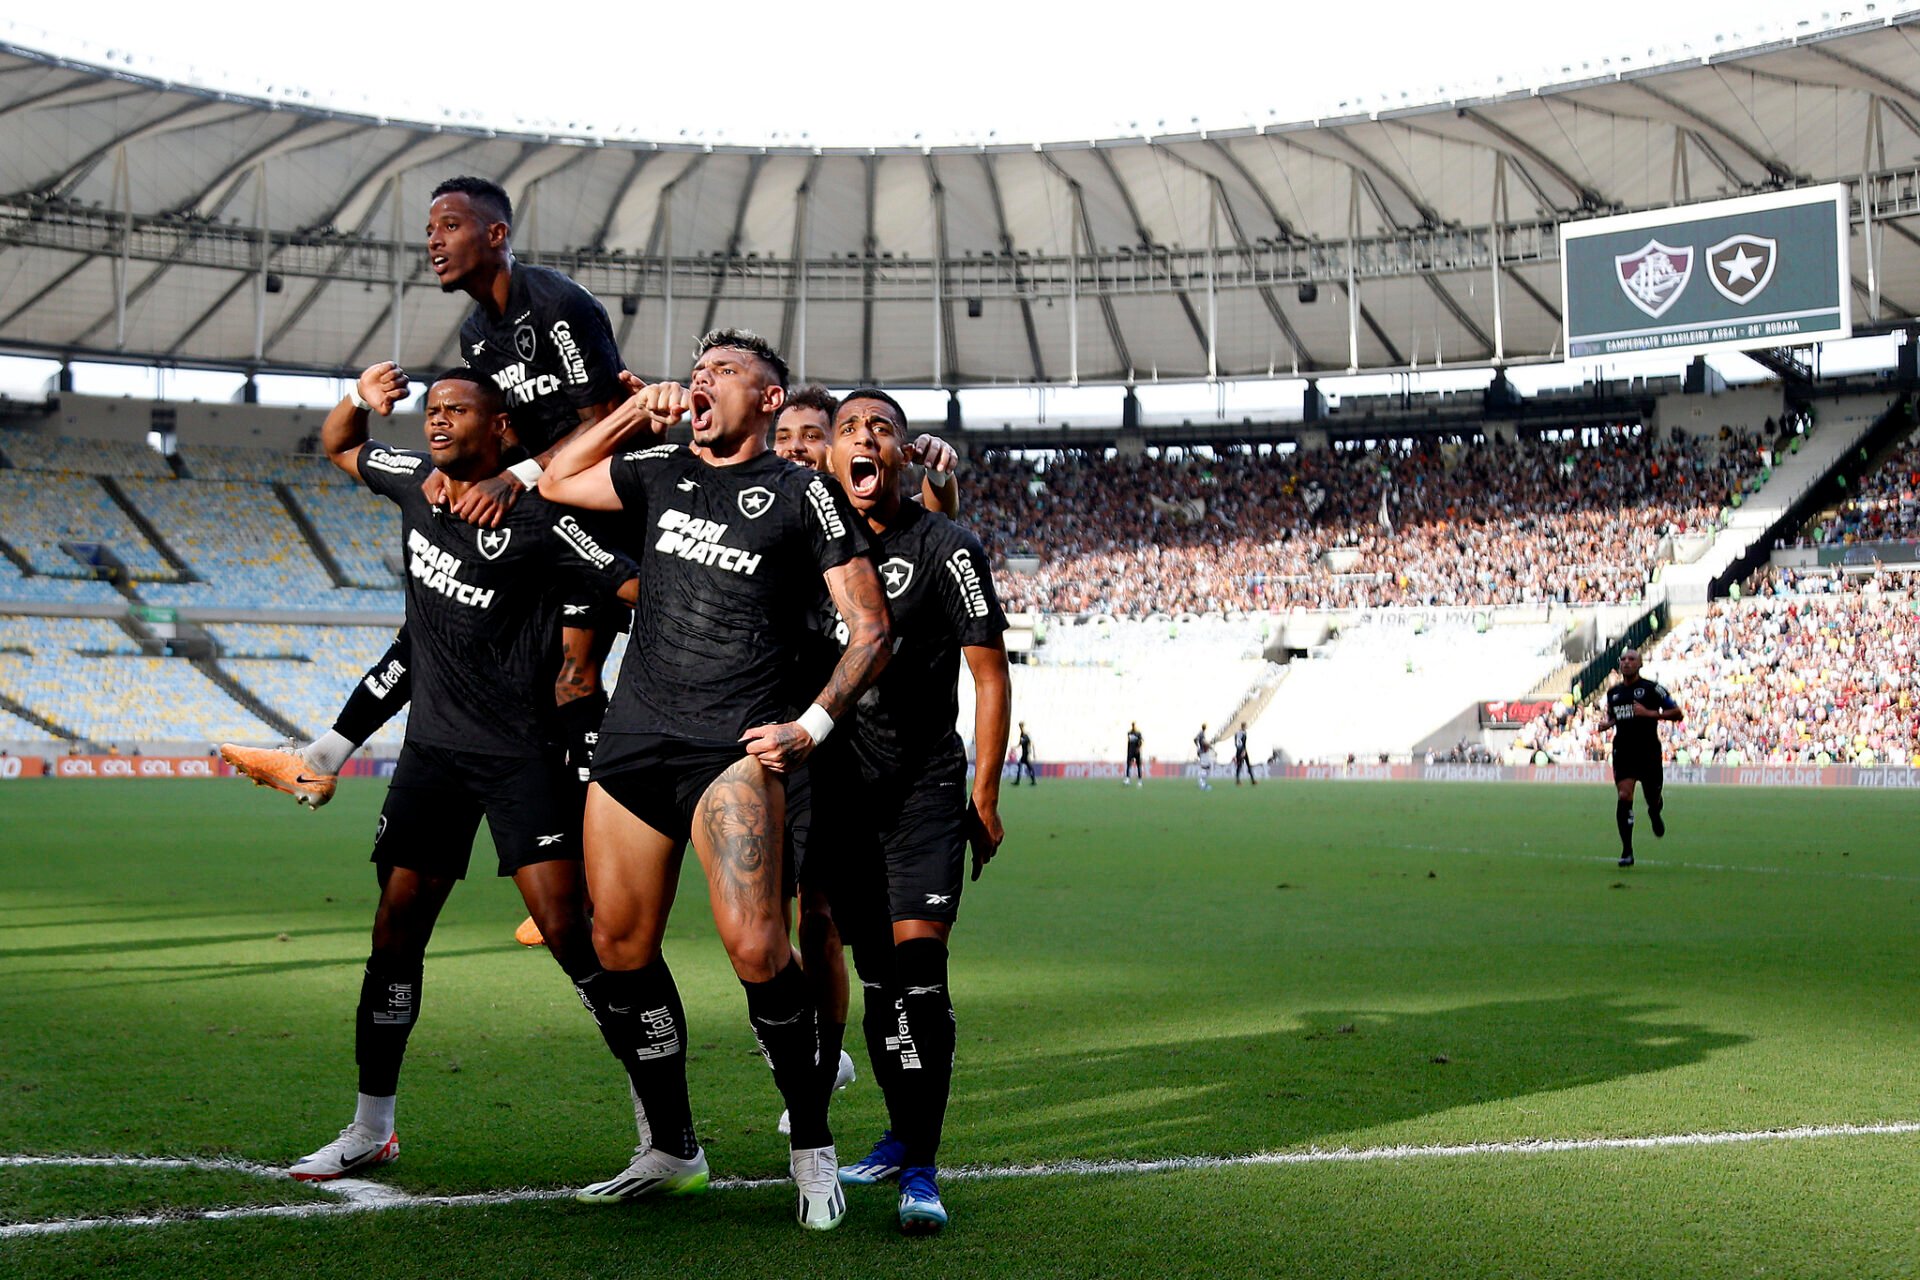 Botafogo segue imponente no Campeonato Brasileiro – Cardoso na Rede